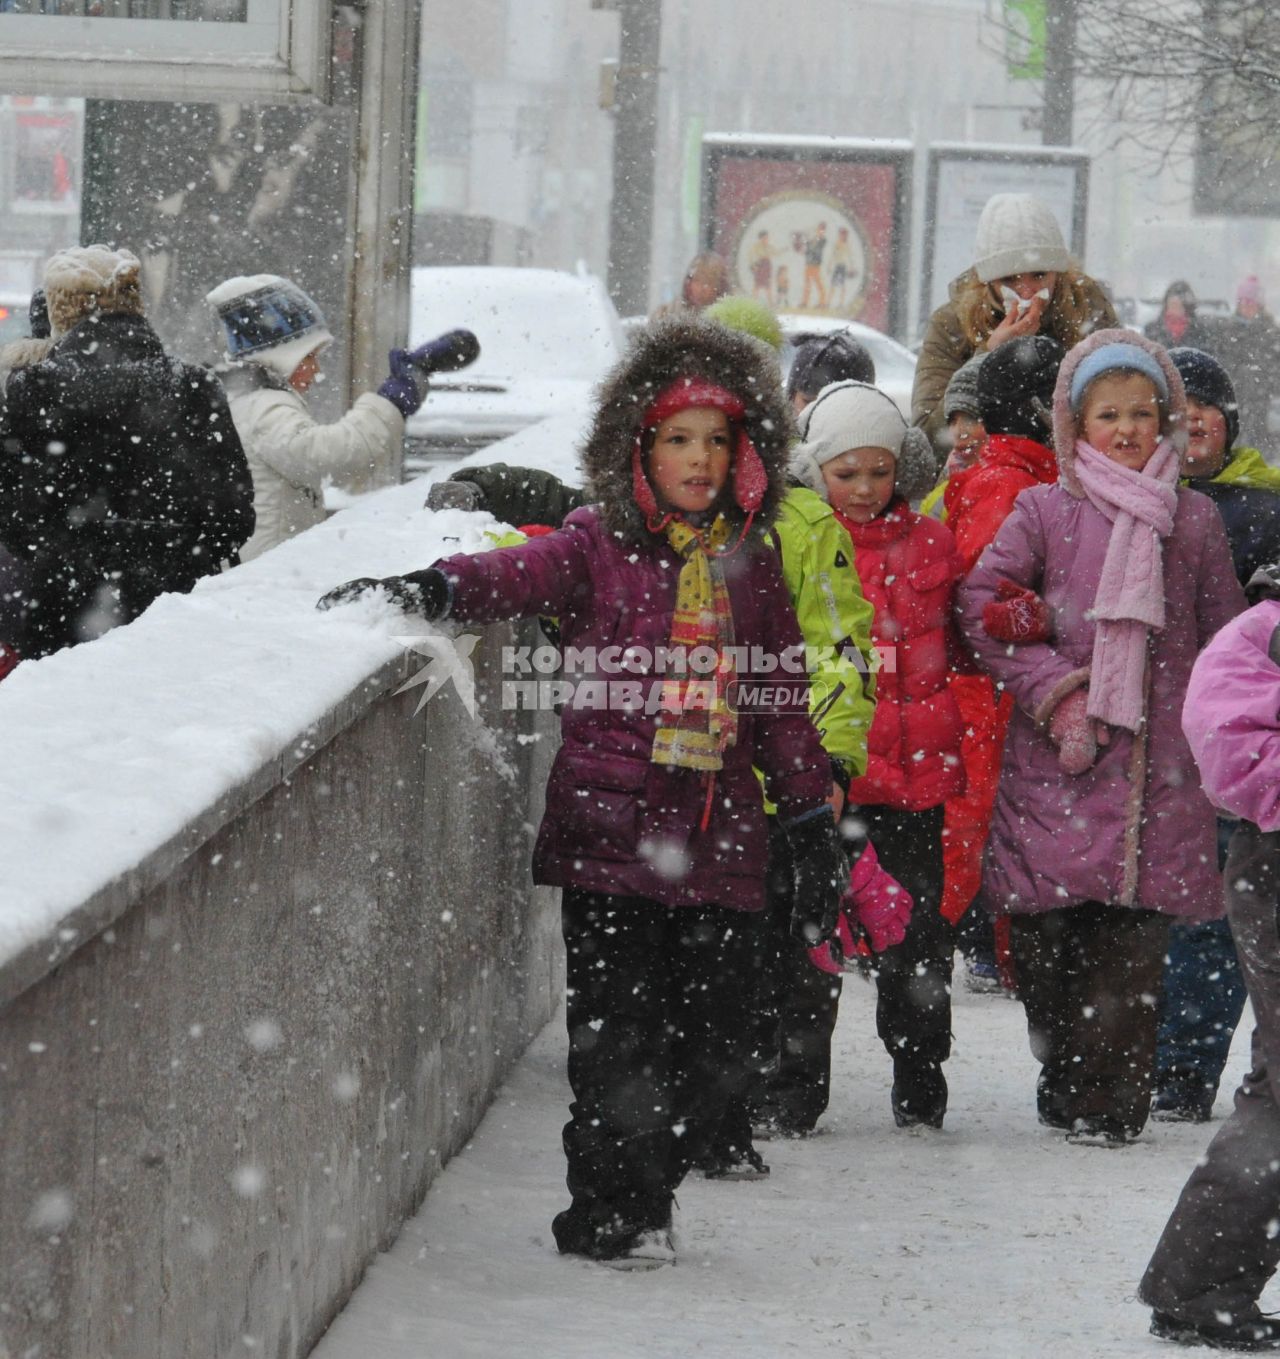 Снегопад в городе.  На снимке: подружки на зимней прогулке.